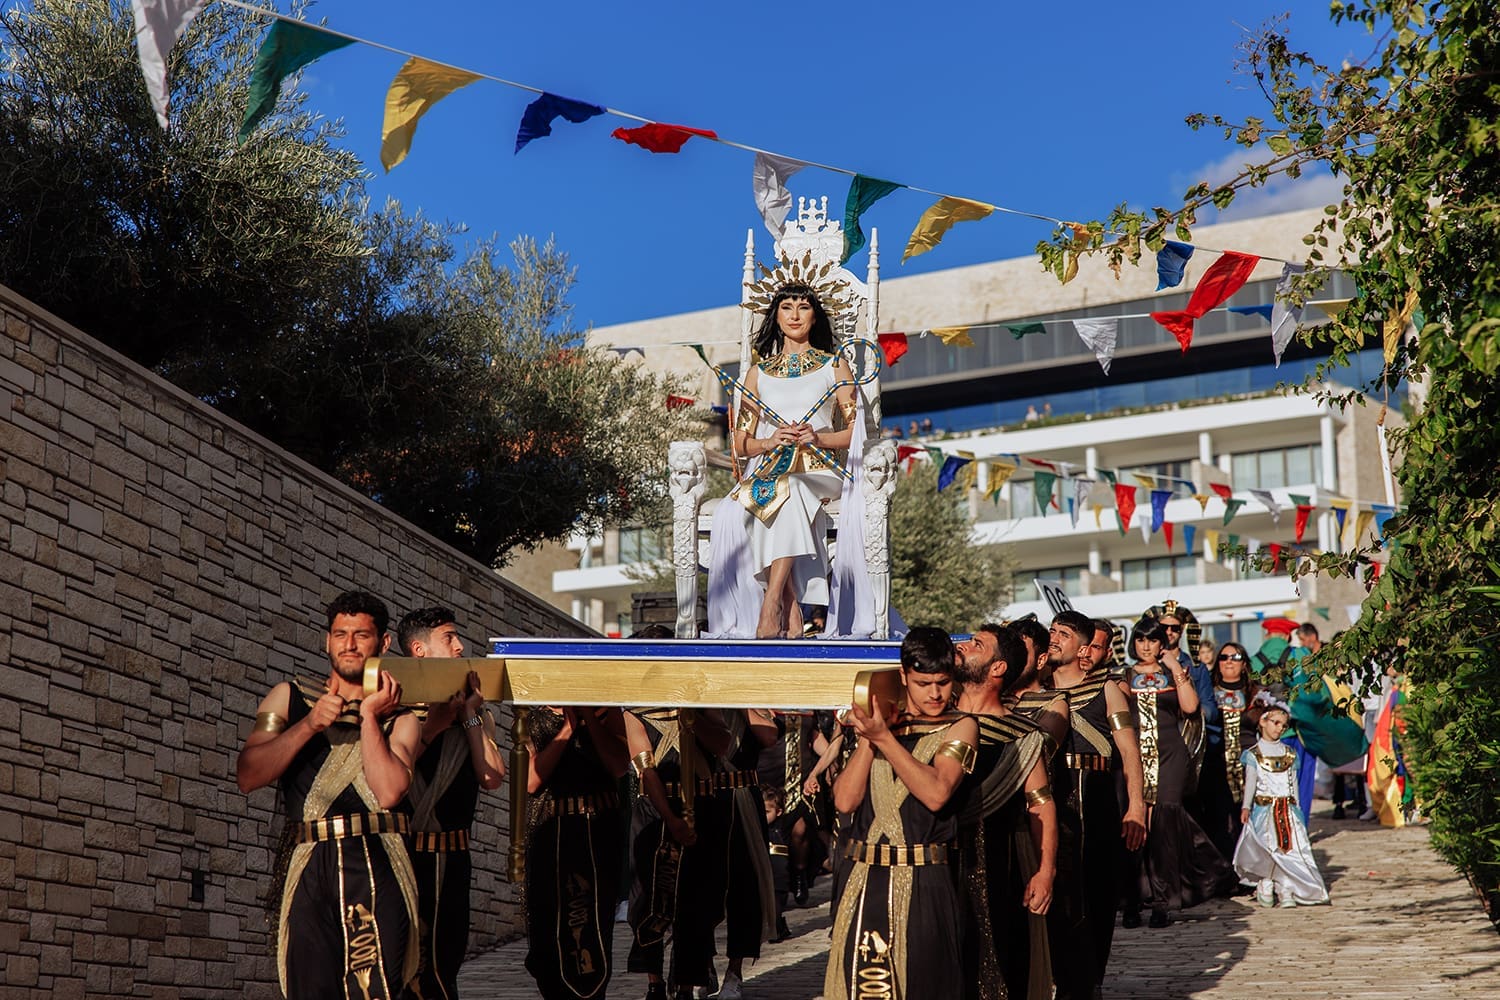  Η Βασίλισσα Κλεοπάτρα έδωσε παλμό και τόνο στην καρναβαλική παρέλαση, εμπνευσμένη από μια ιστορική παράδοση της Κύπρου με ρίζες στην αρχαιότητα, το Ακρωτήρι Αγίου Γεωργίου και την Γερόνησσο